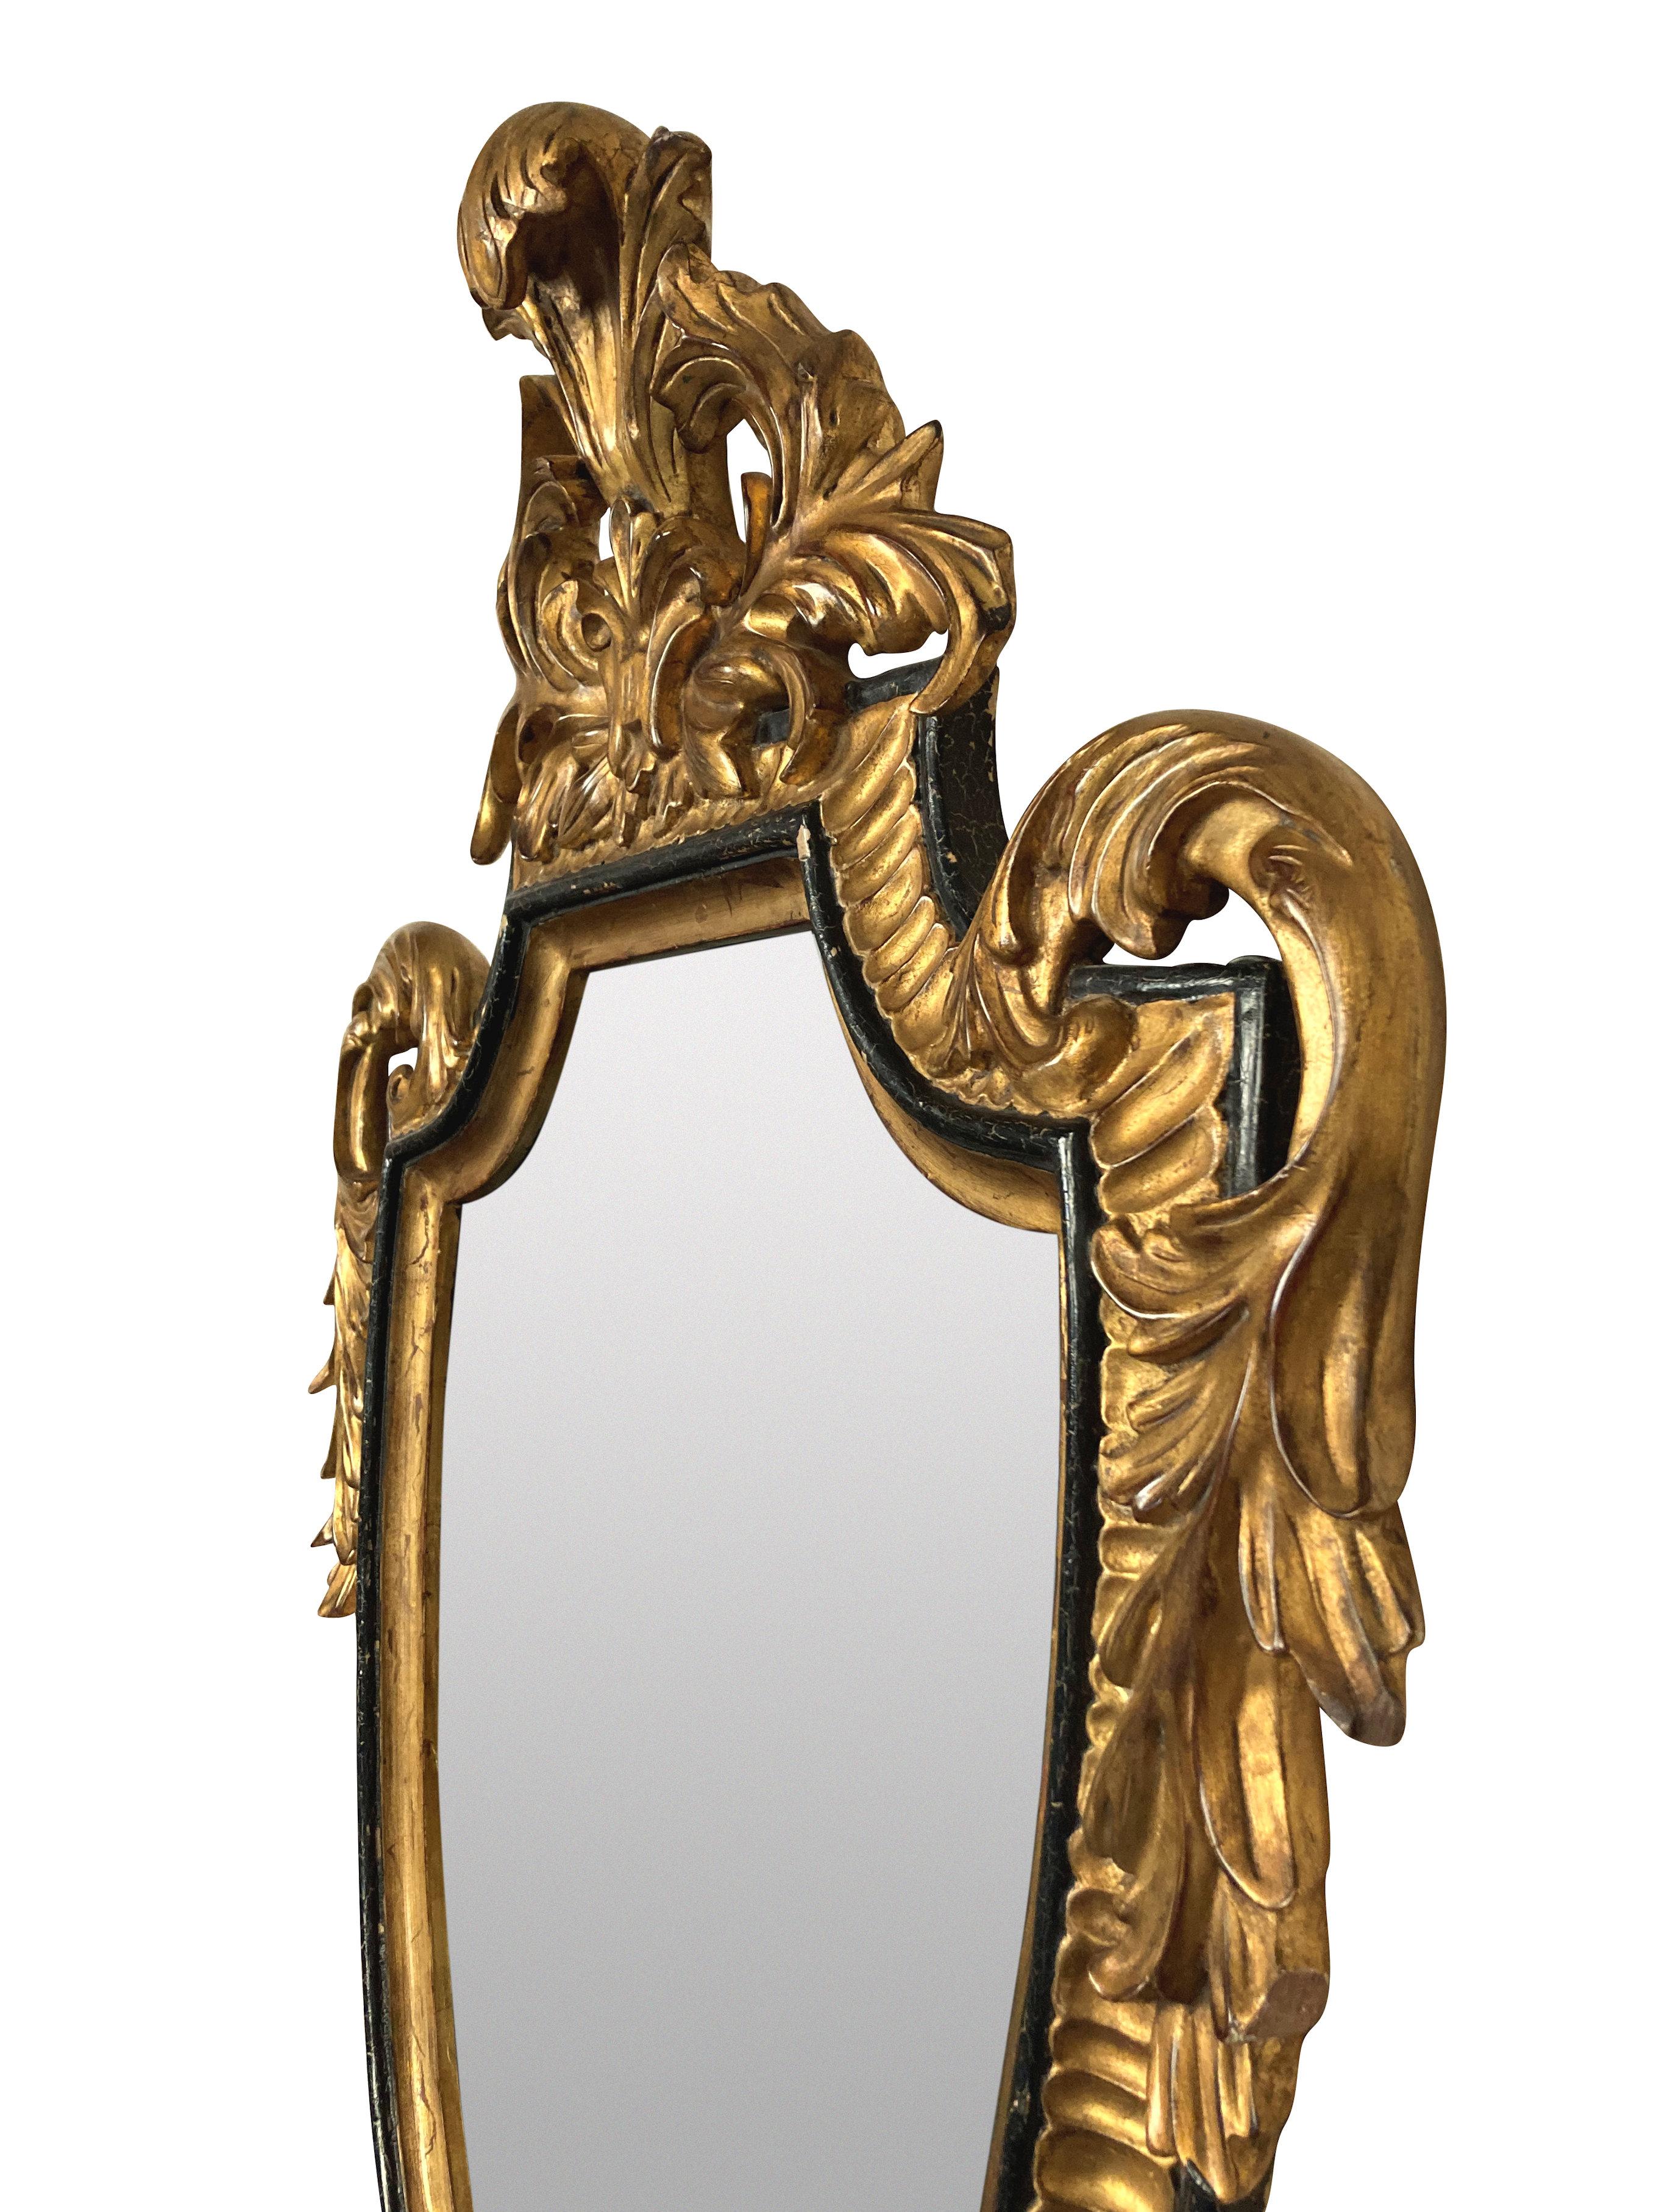 Miroir américain de style Louis XV en bois sculpté, doré et ébène par The Dauphine Mirror Co, West Palm Beach.

